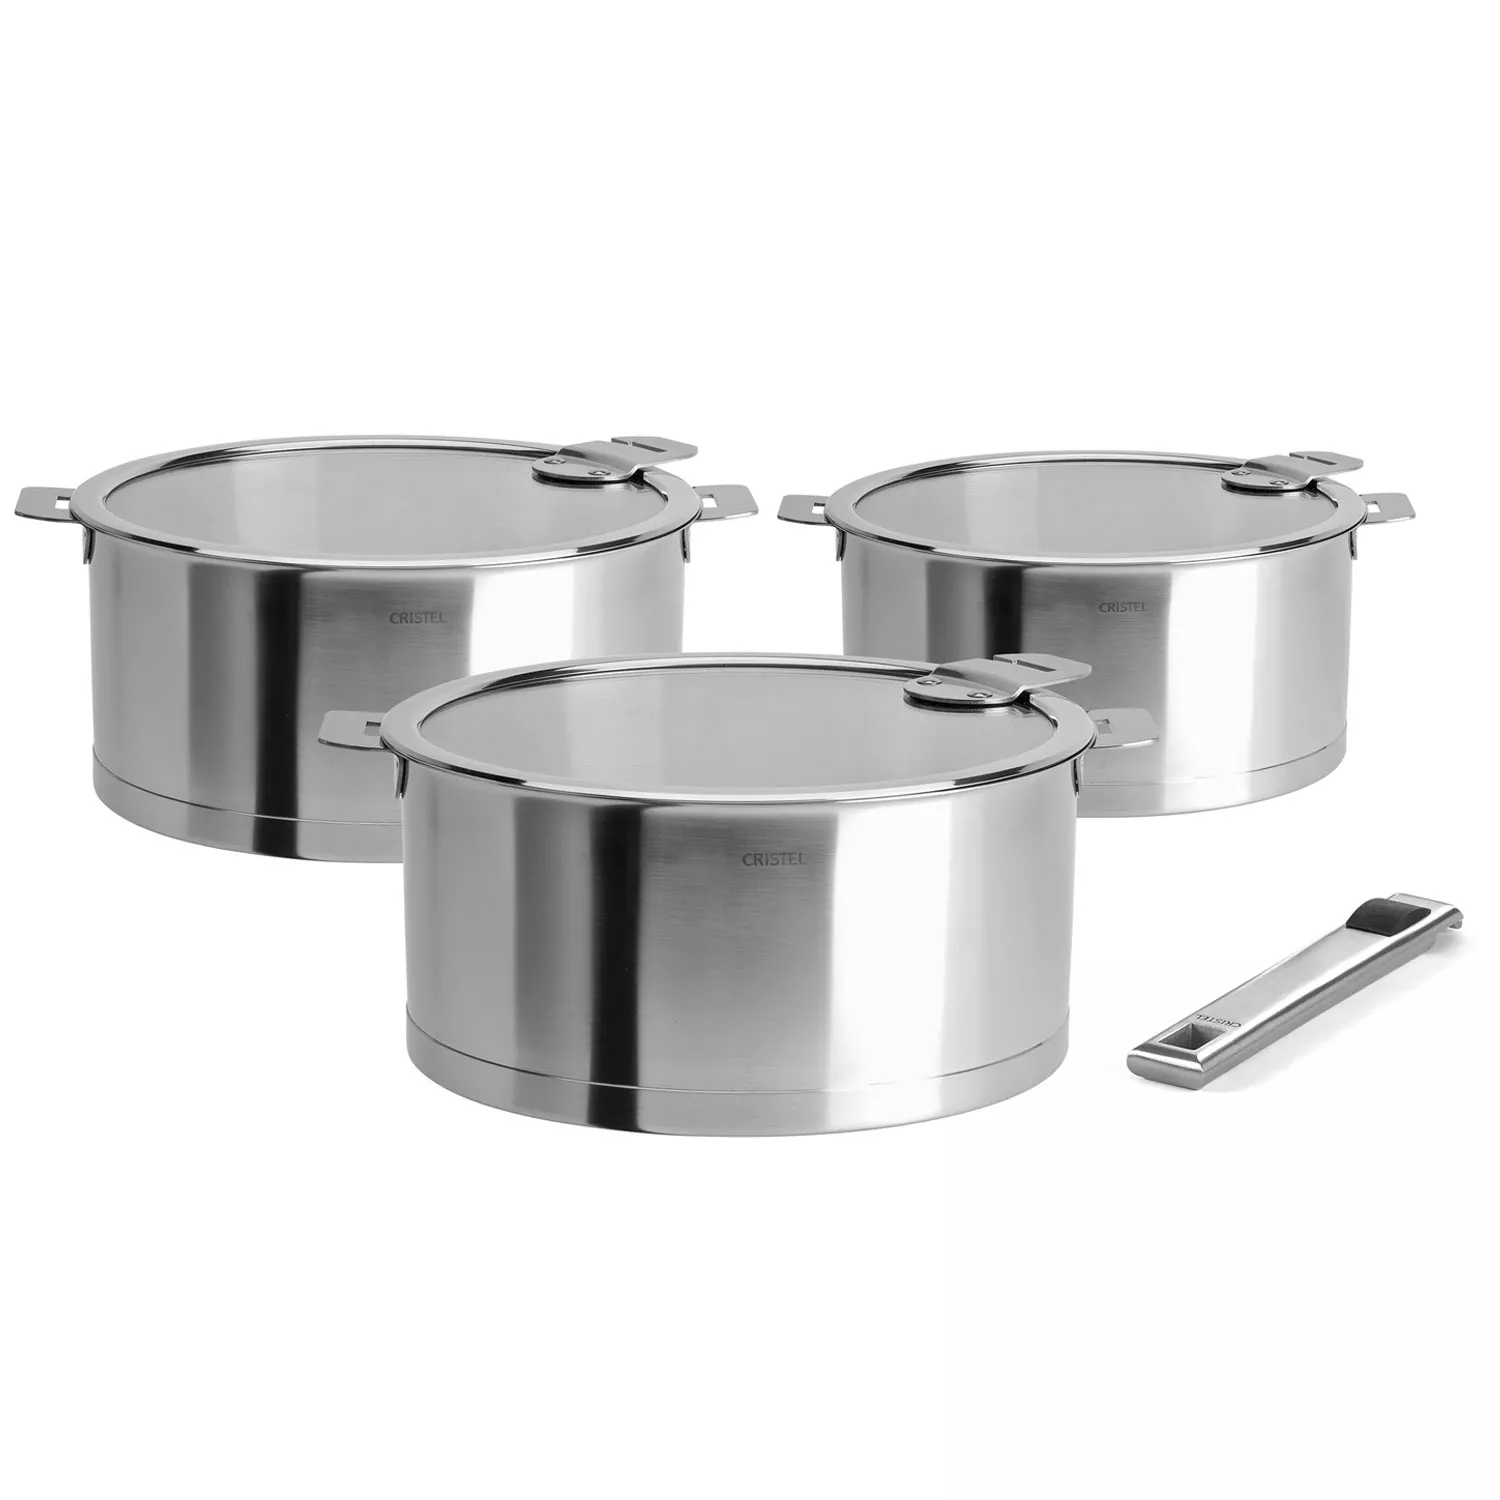 17 Pieces Pots and Pans Set, Nonstick Detachable Handle Cookware